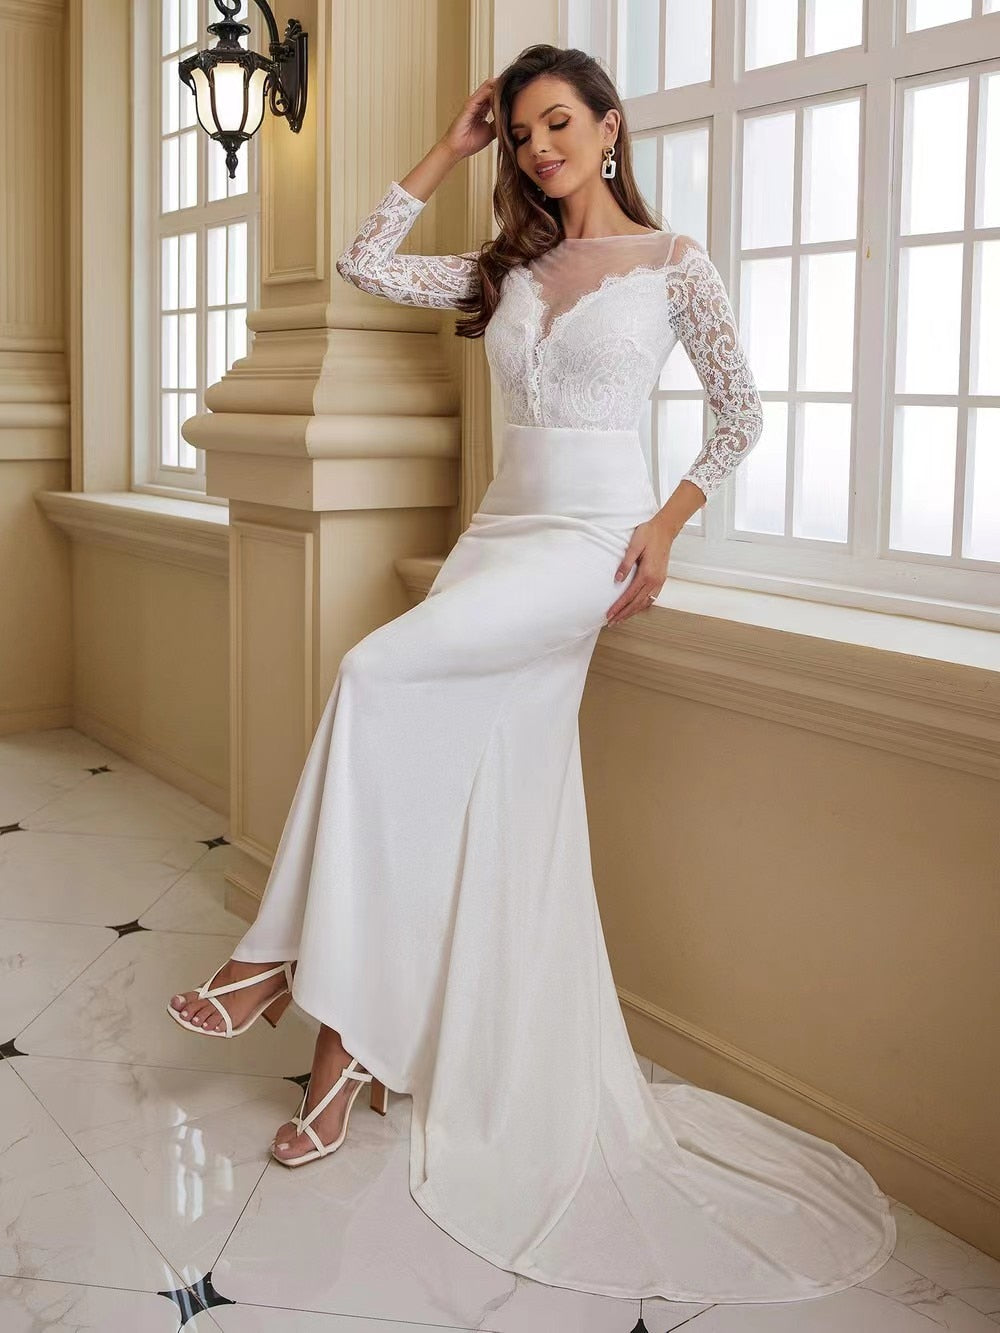 Wedding dress Bride White Long Sleeve Elegant Gorgeous Robe Mariage Long Train Dress The Clothing Company Sydney